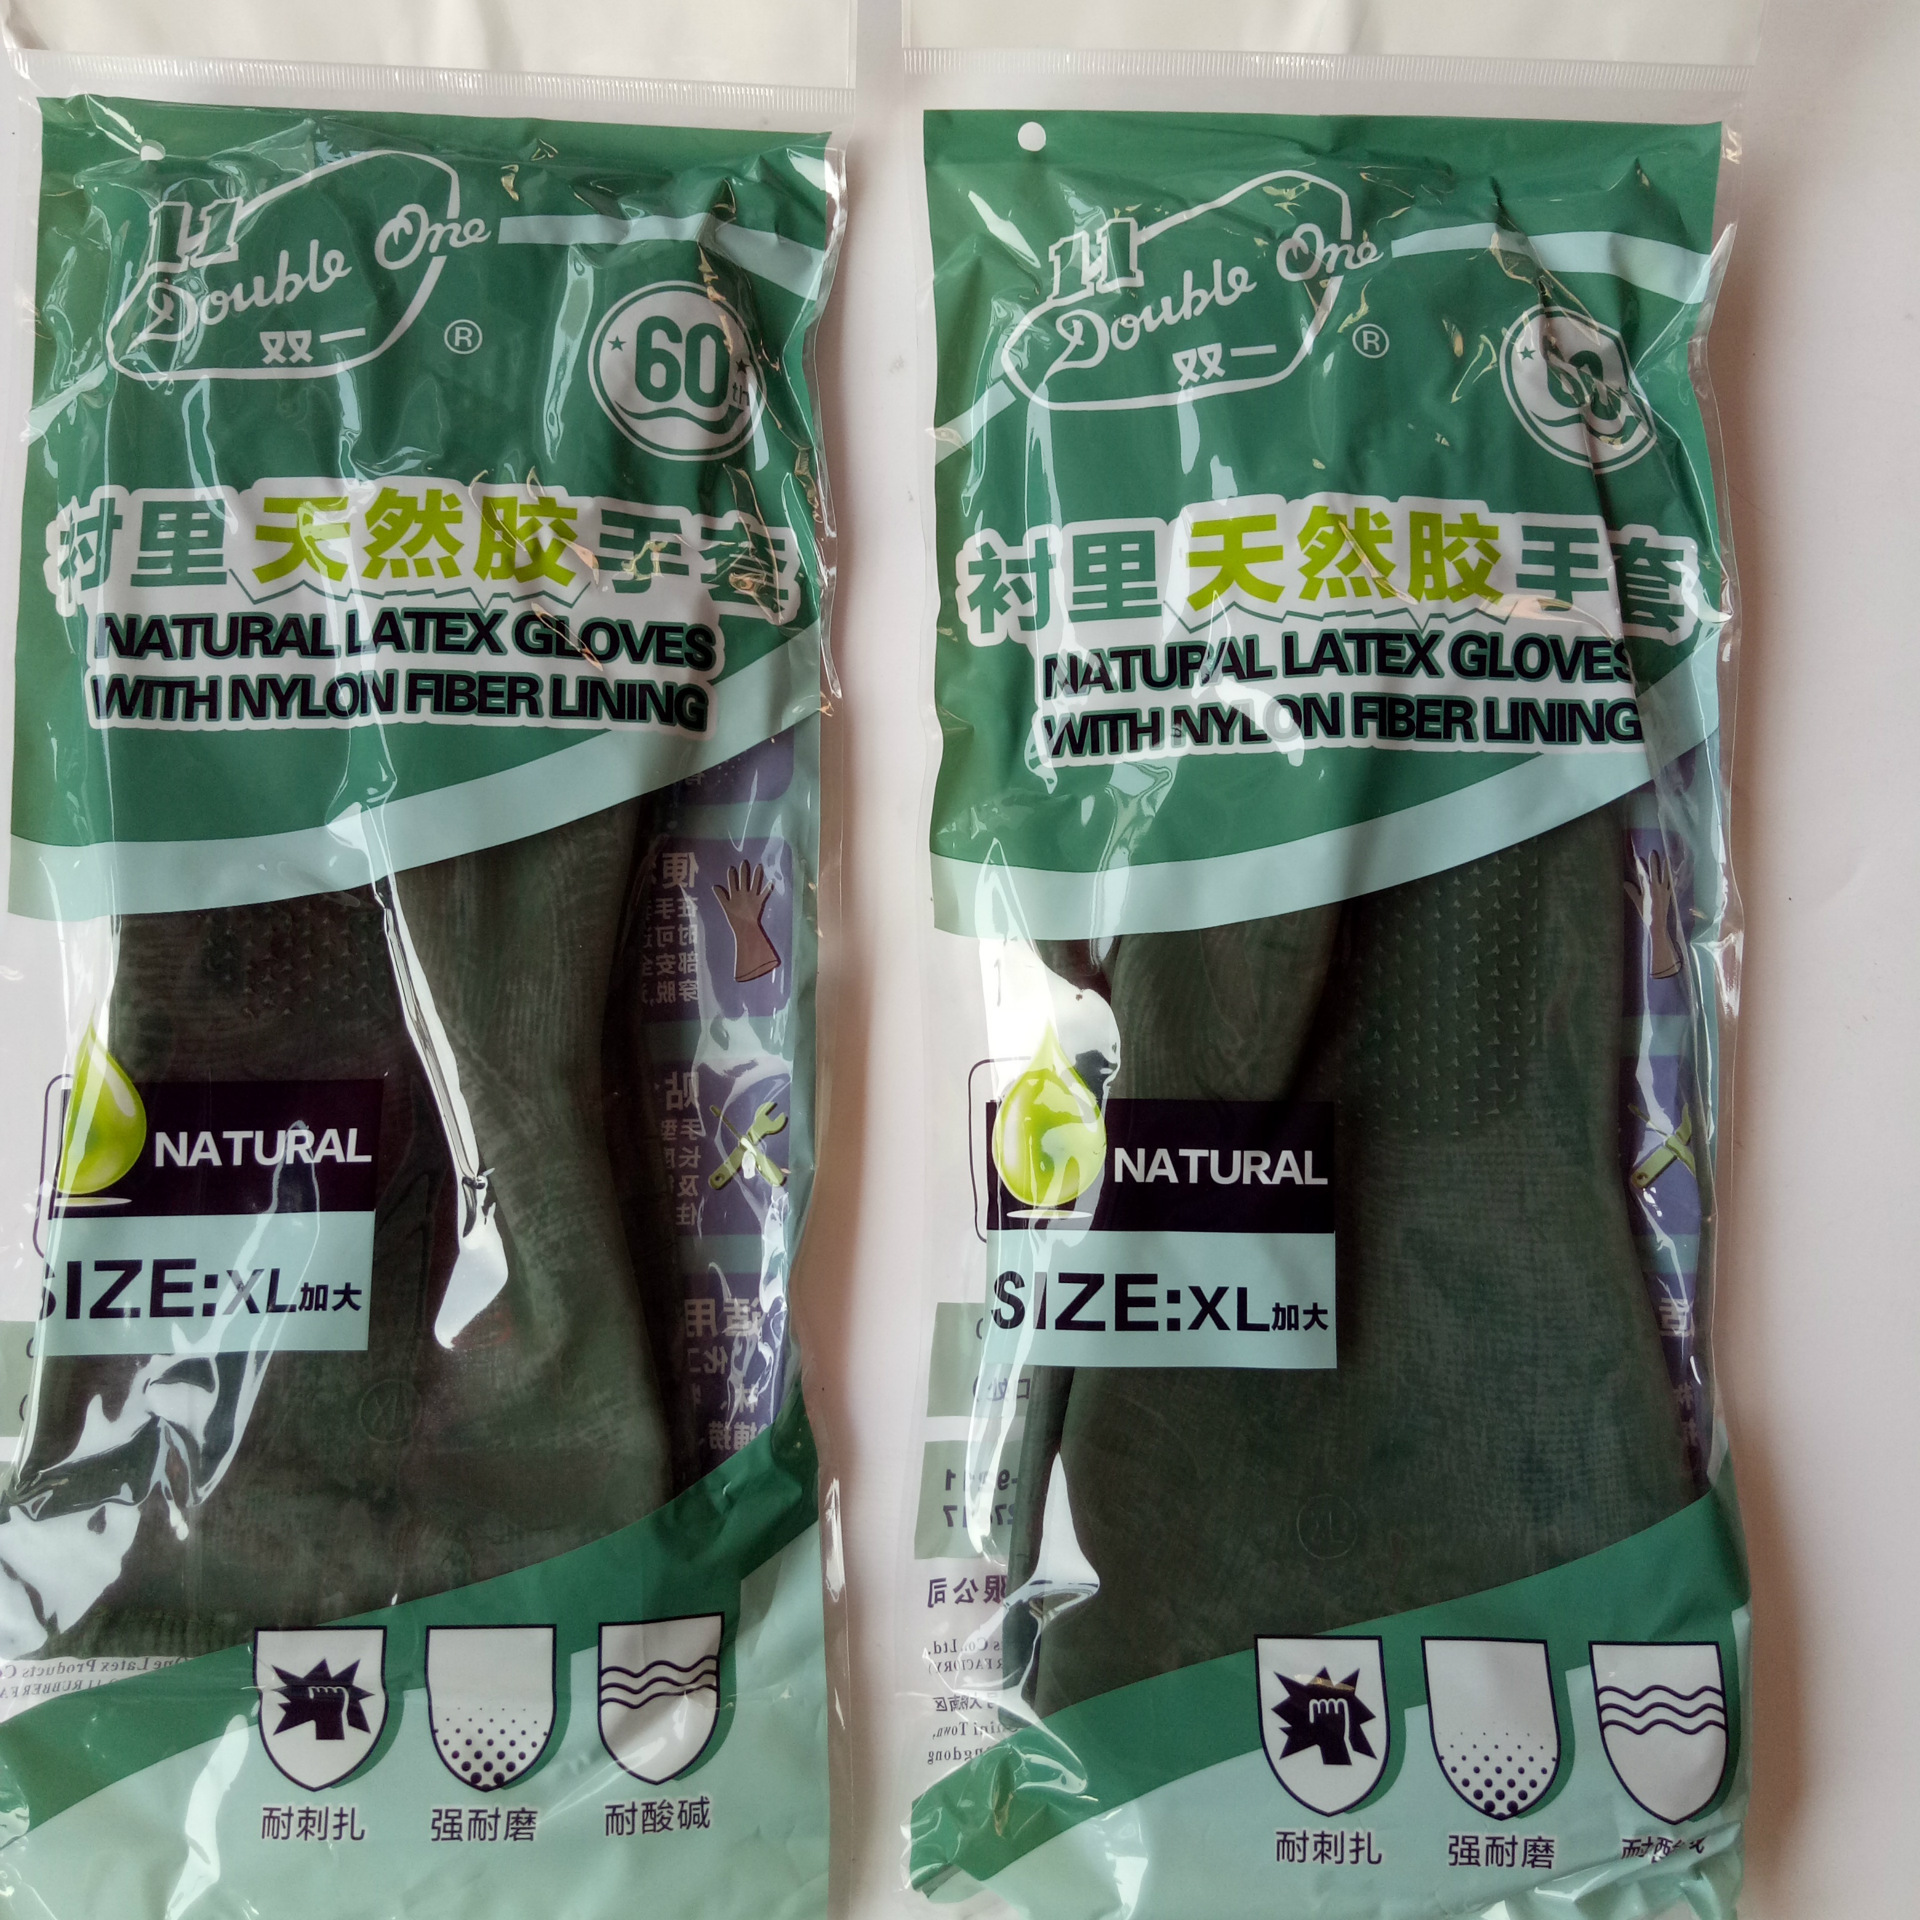 双一牌丁基尼龙衬里/高效耐酸碱工业胶防油手套十一厂绿色橡乳胶